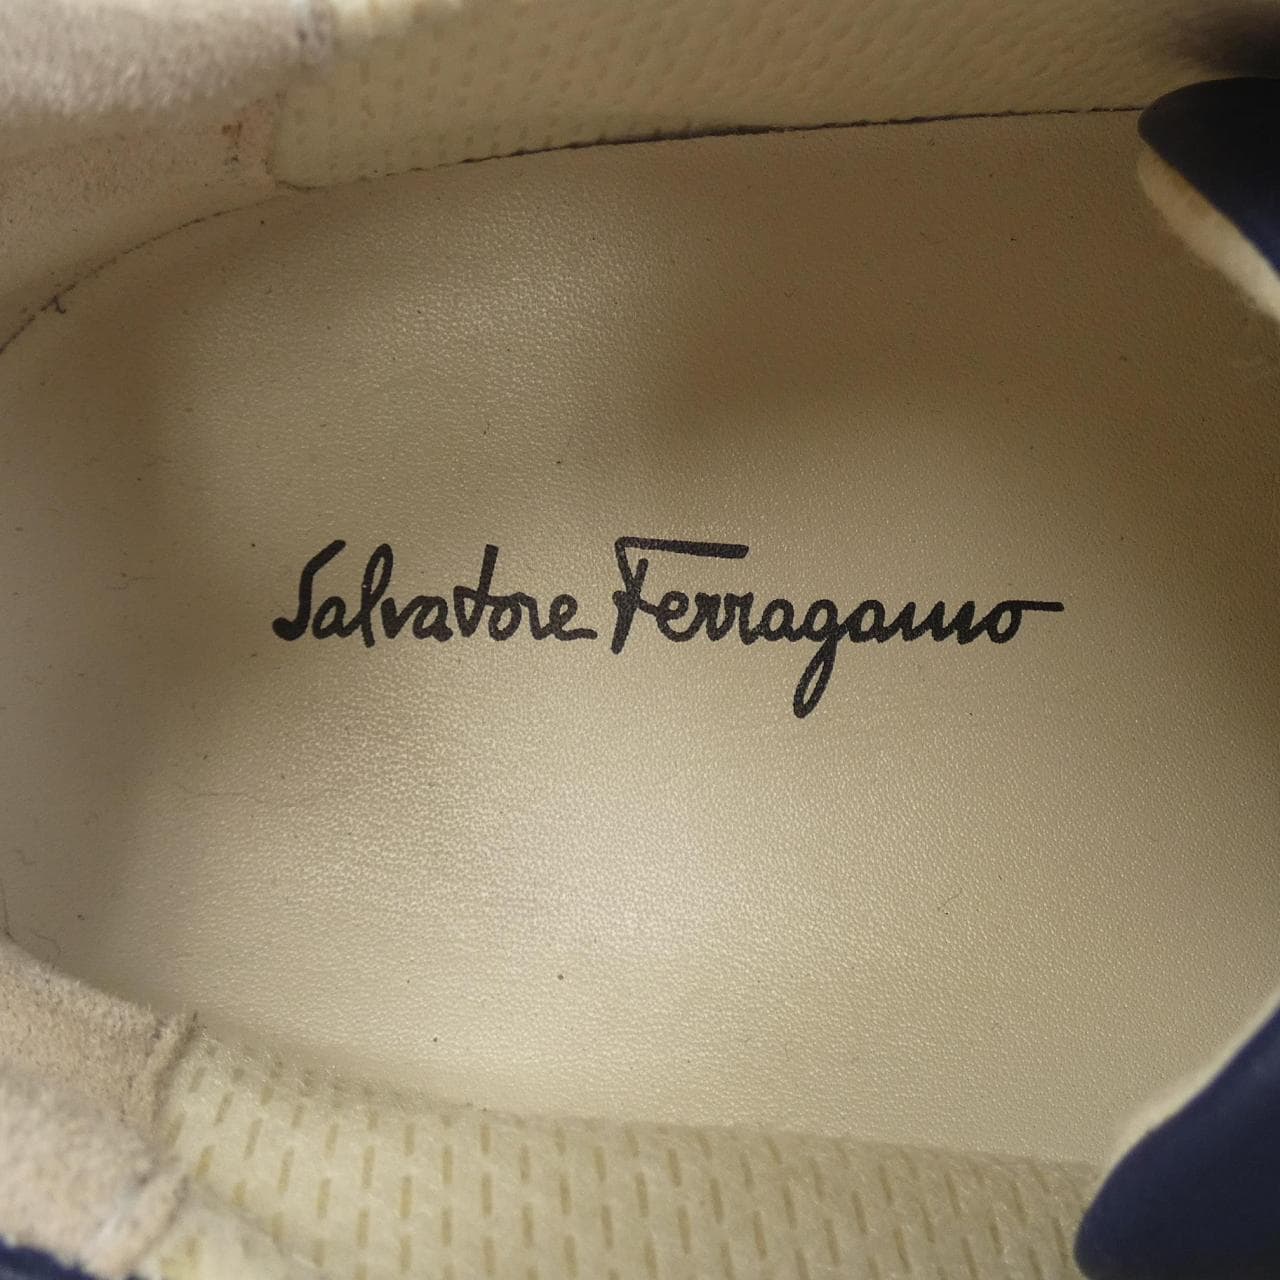 萨尔瓦多·菲拉格慕 (SALVATORE FERRAGAMO) 鞋履